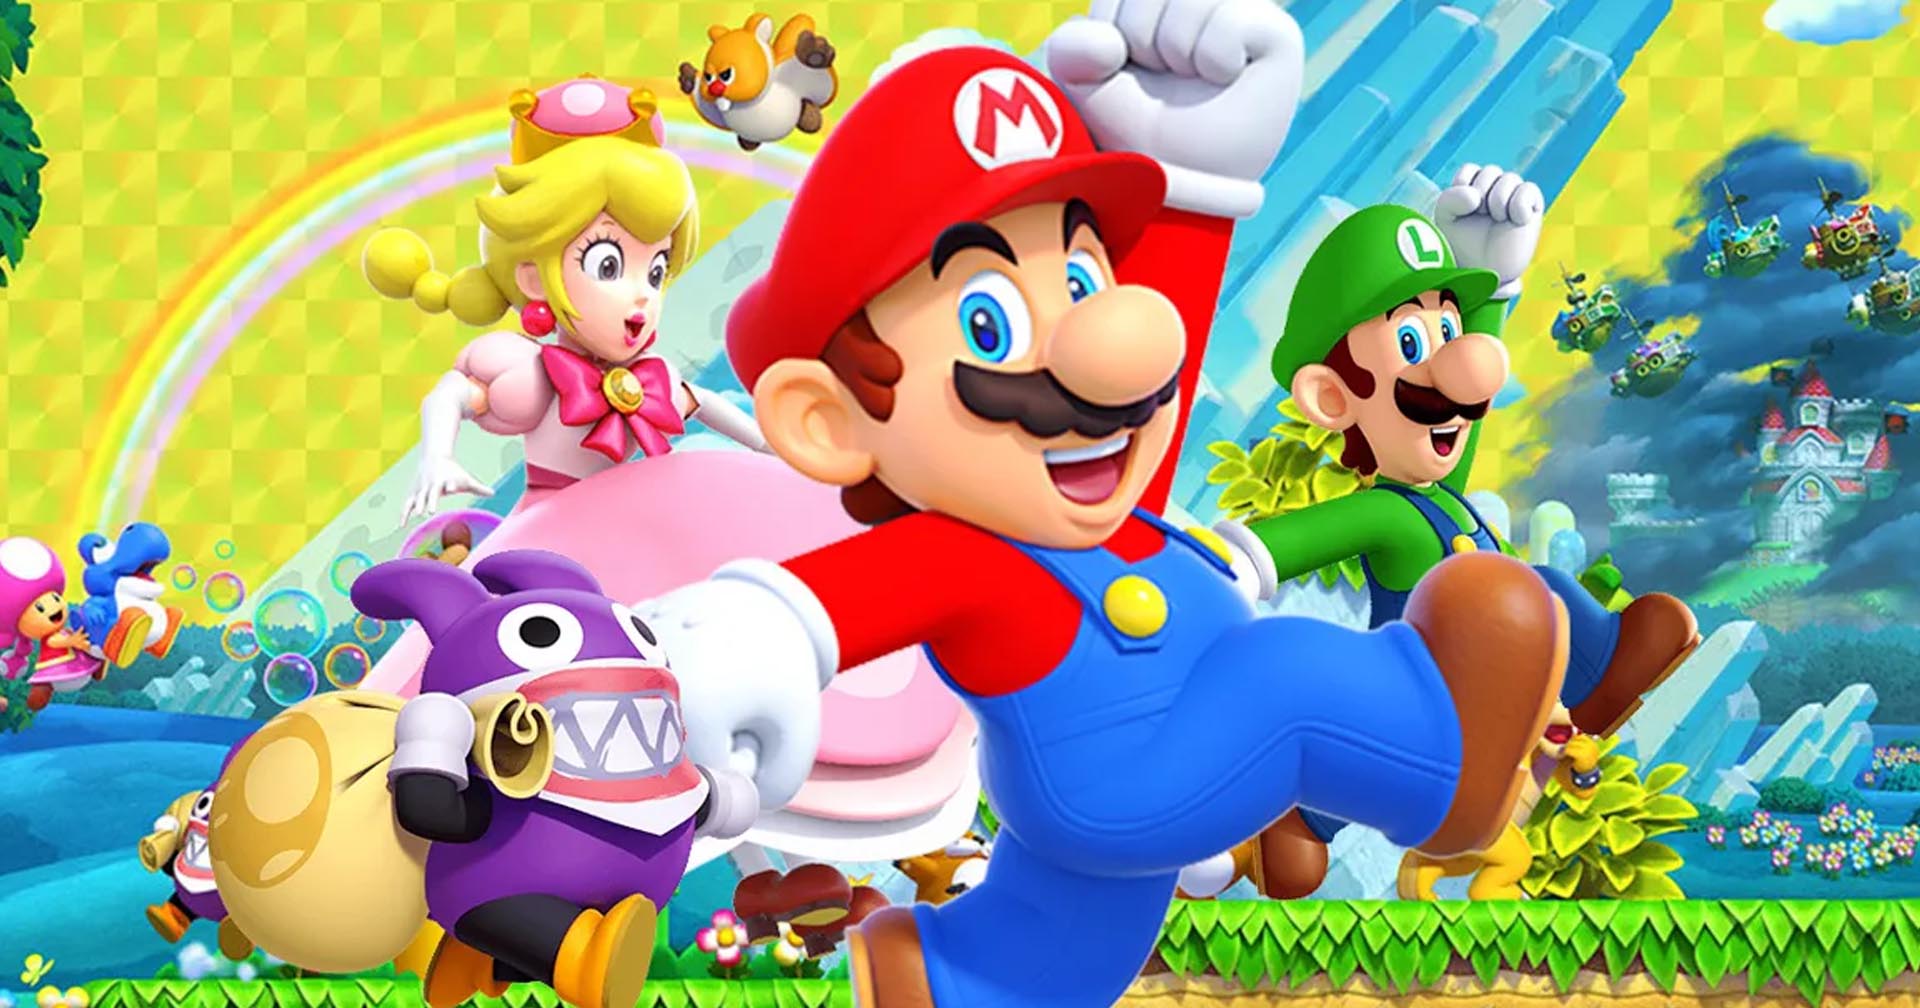 Super Mario Bros terá animação nos cinemas. Veja o trailer